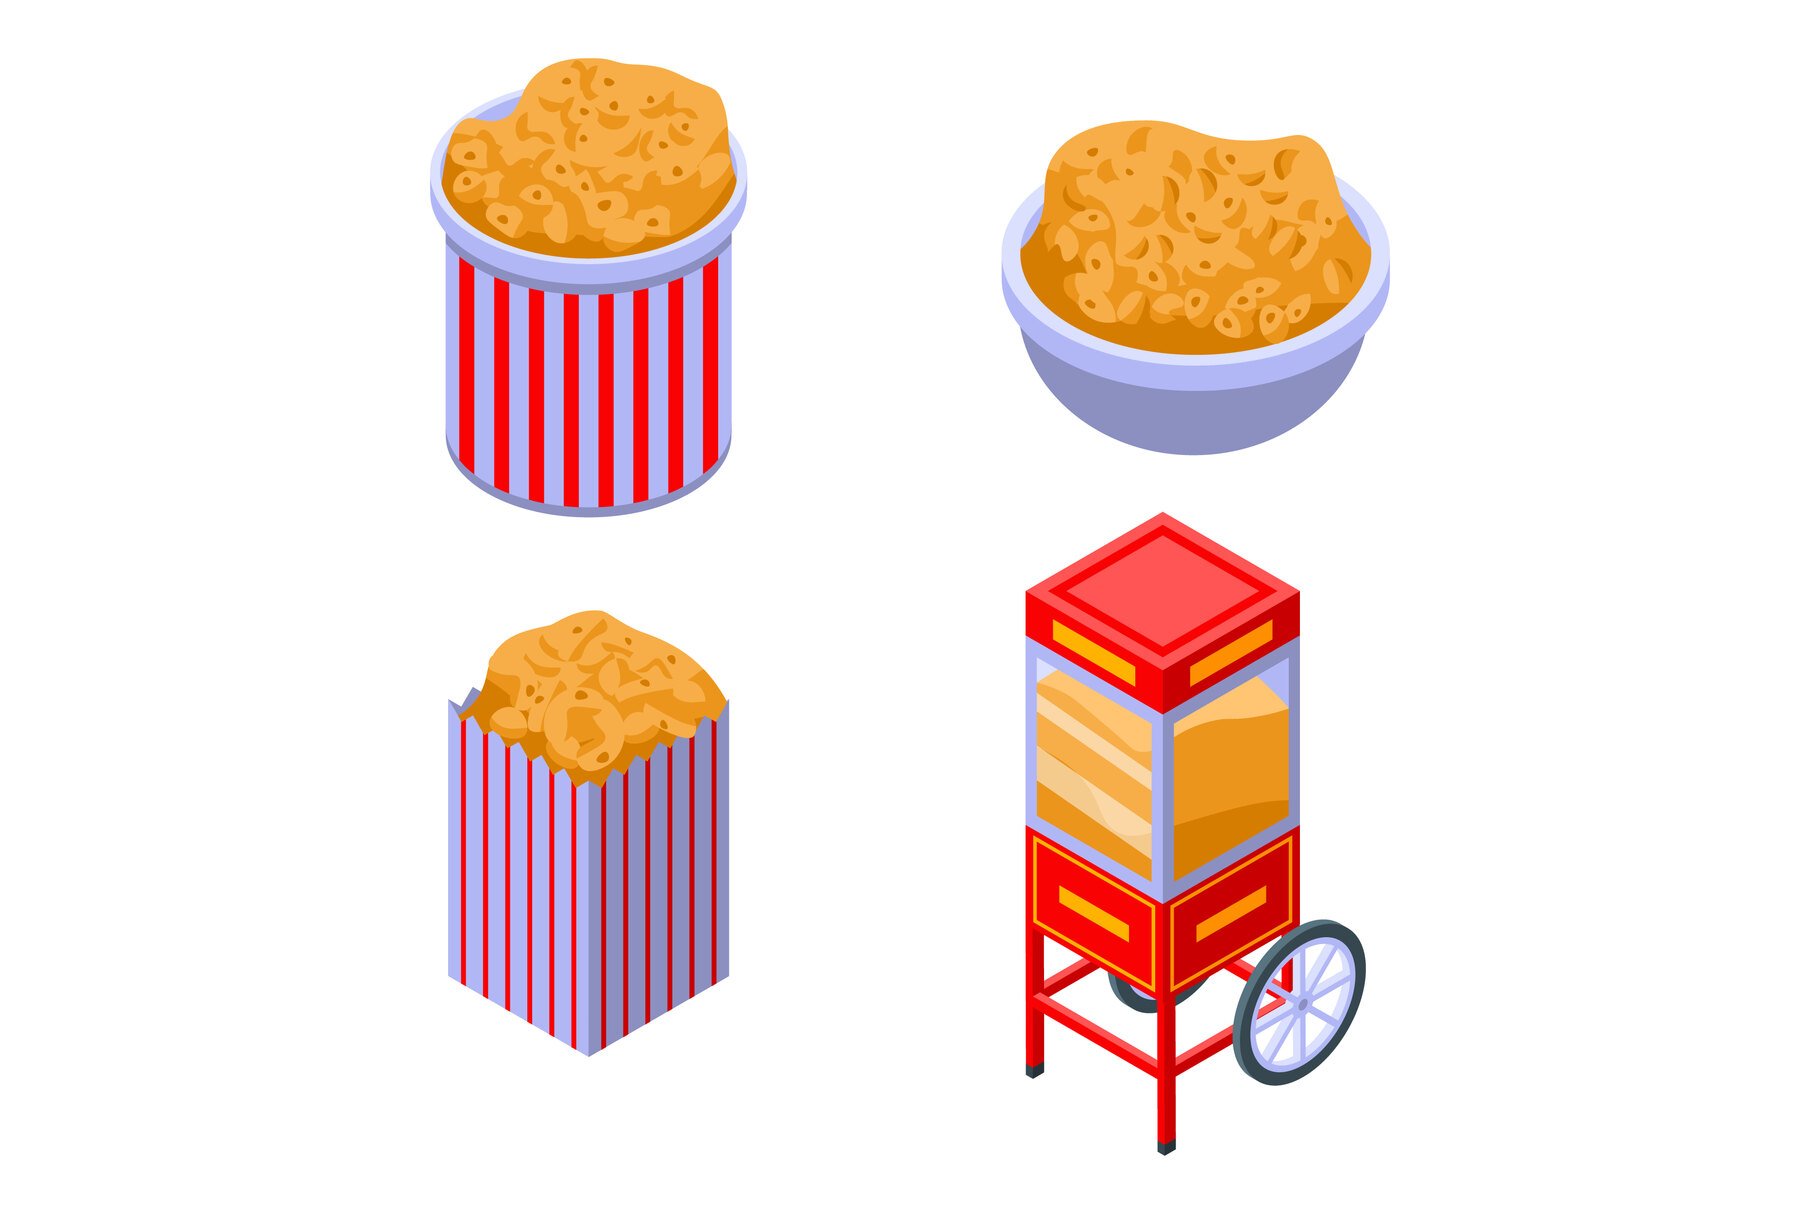 Popcorn icons set, isometric style cover image.